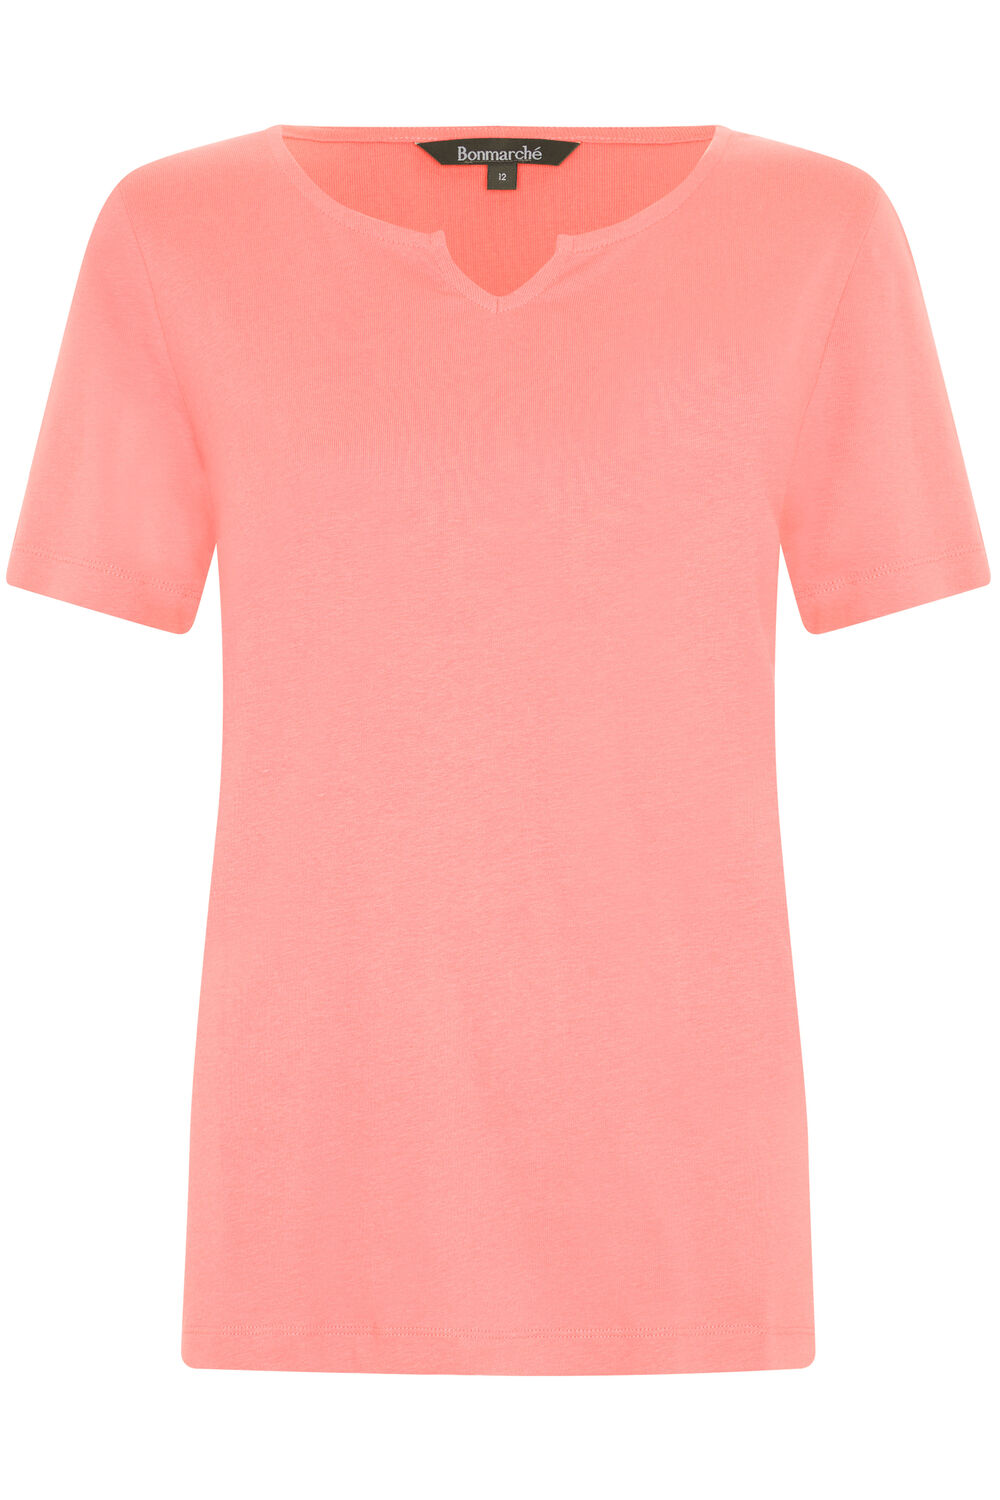 Bonmarche Coral Short Sleeve Plain Notch Neck T-Shirt, Size: 12